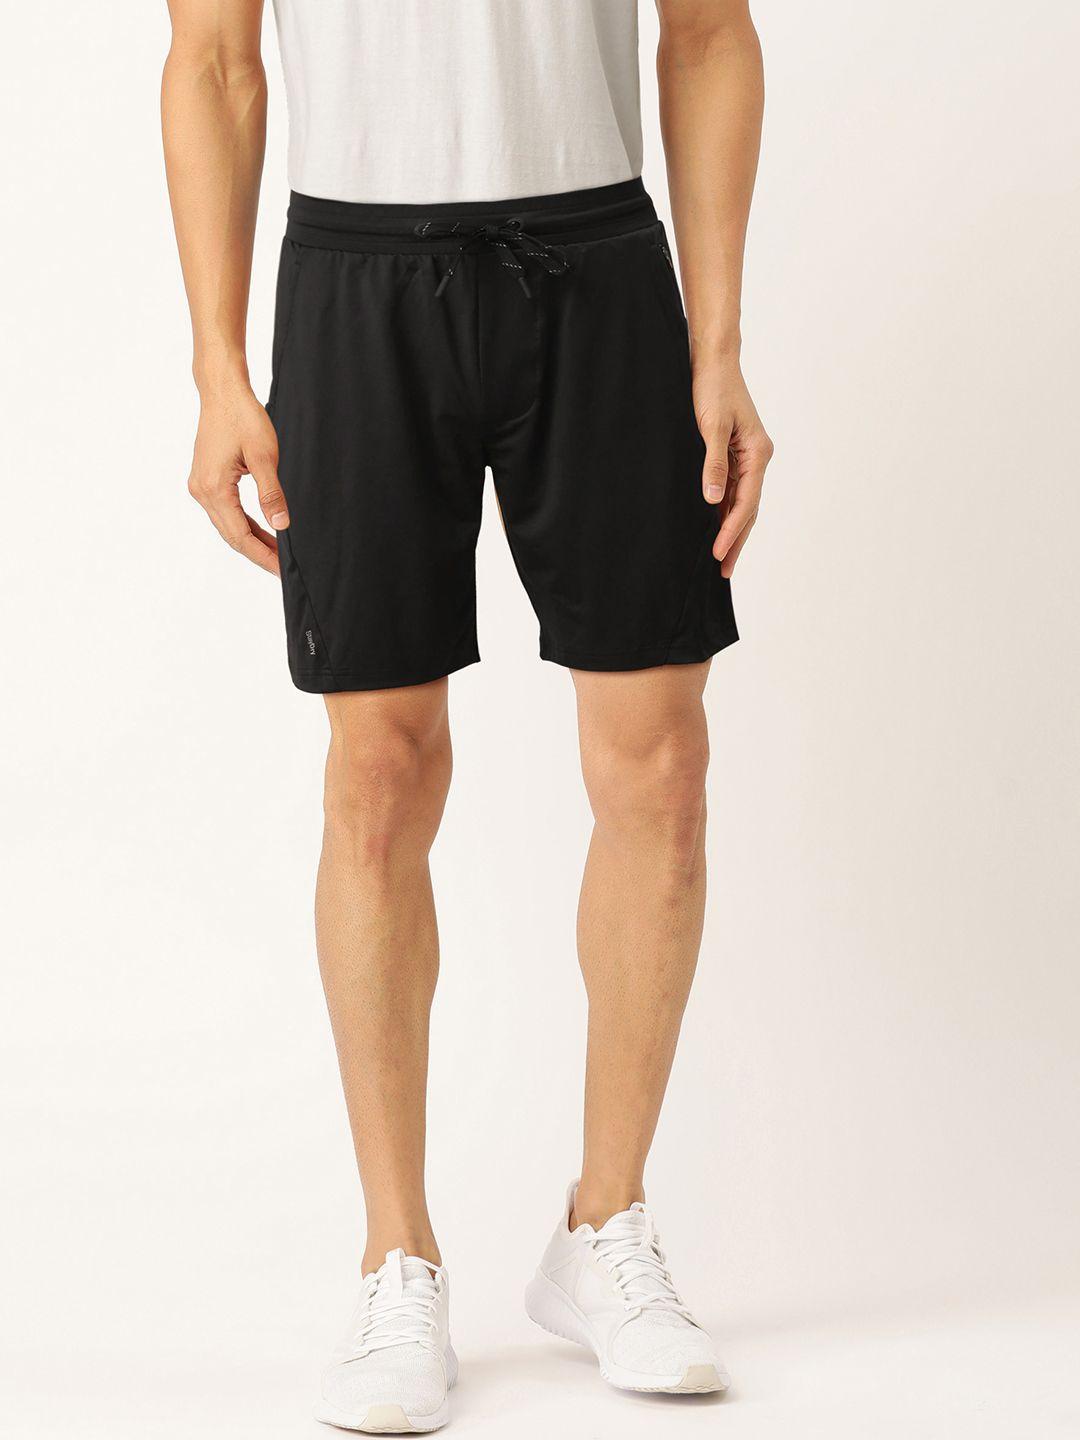 jockey men black solid regular fit sports shorts